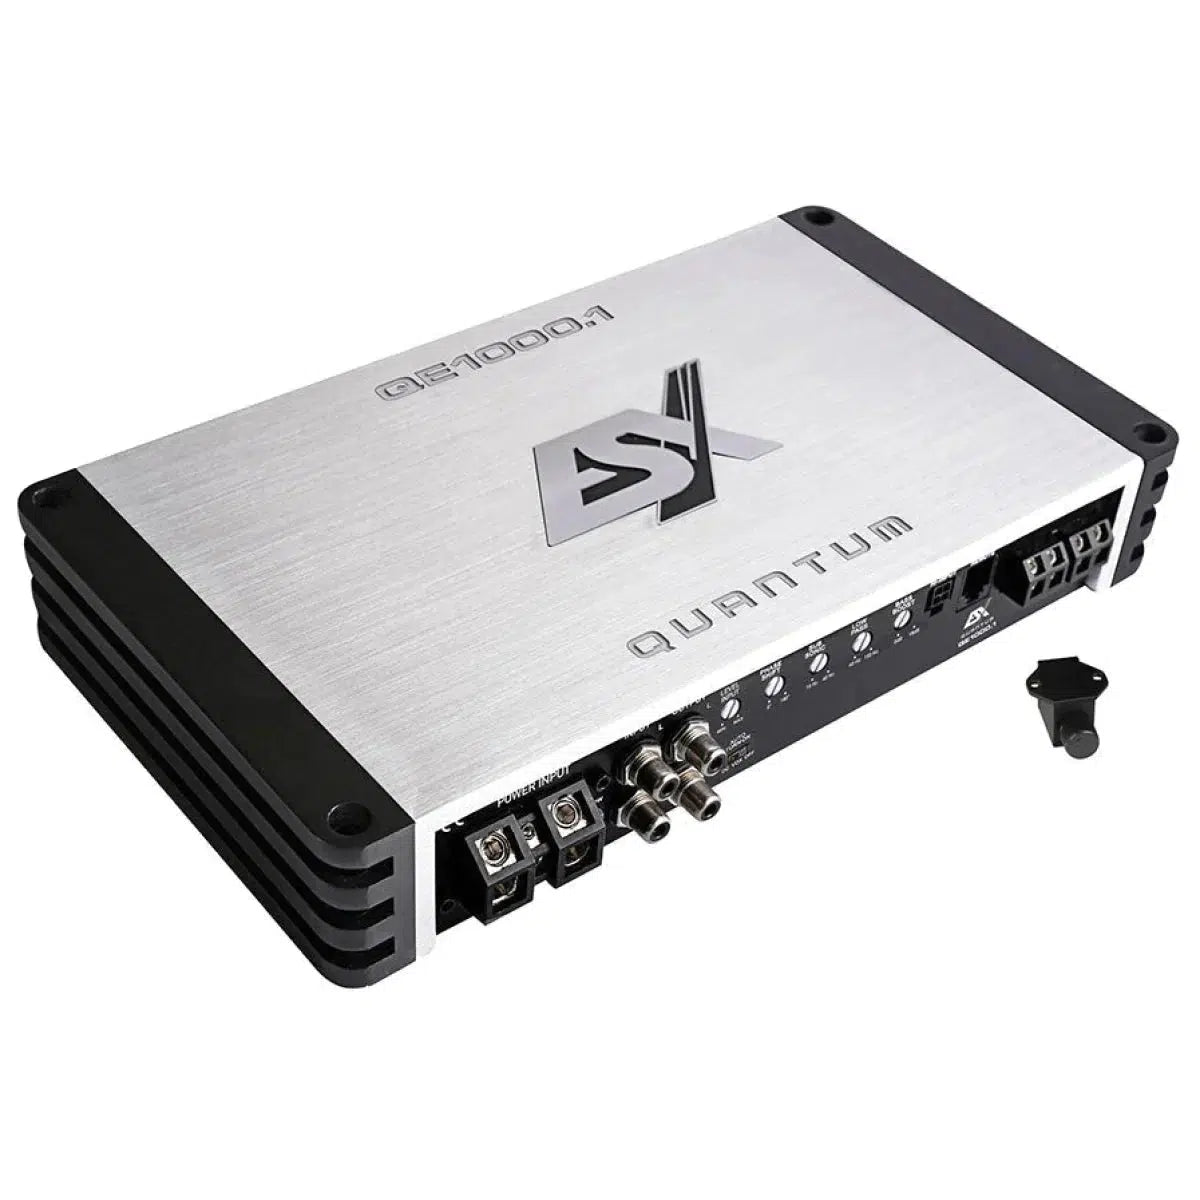 ESX-Quantum QE1000.1-1-Channel Amplifier-Masori.de